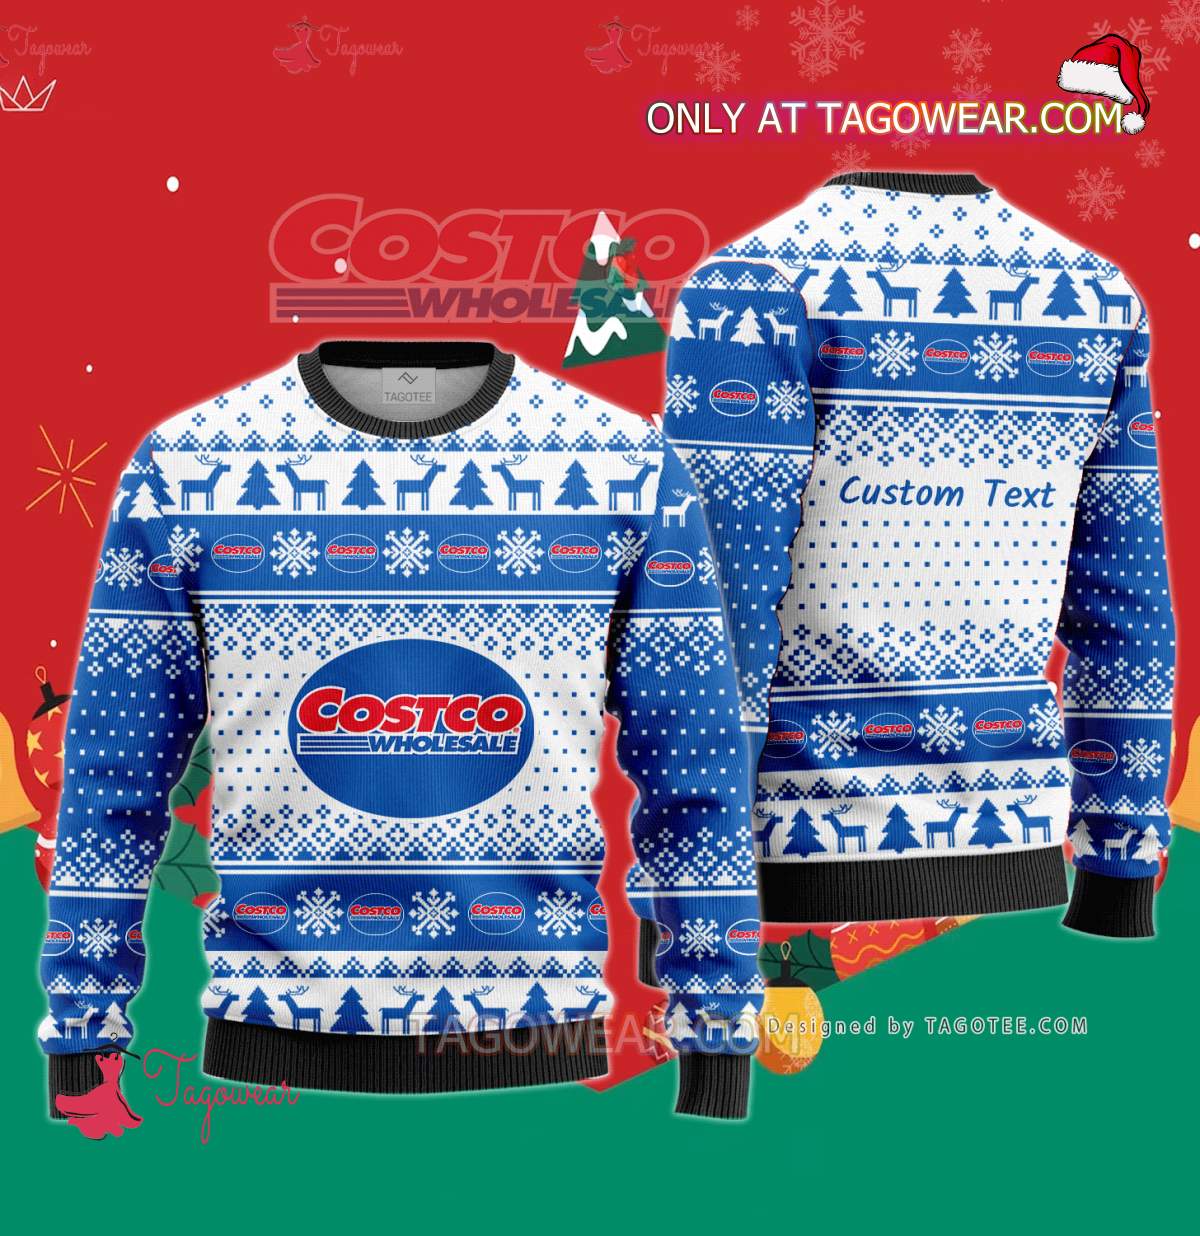 Costco Wholesale Corporation Custom Sweaters - Tagowear